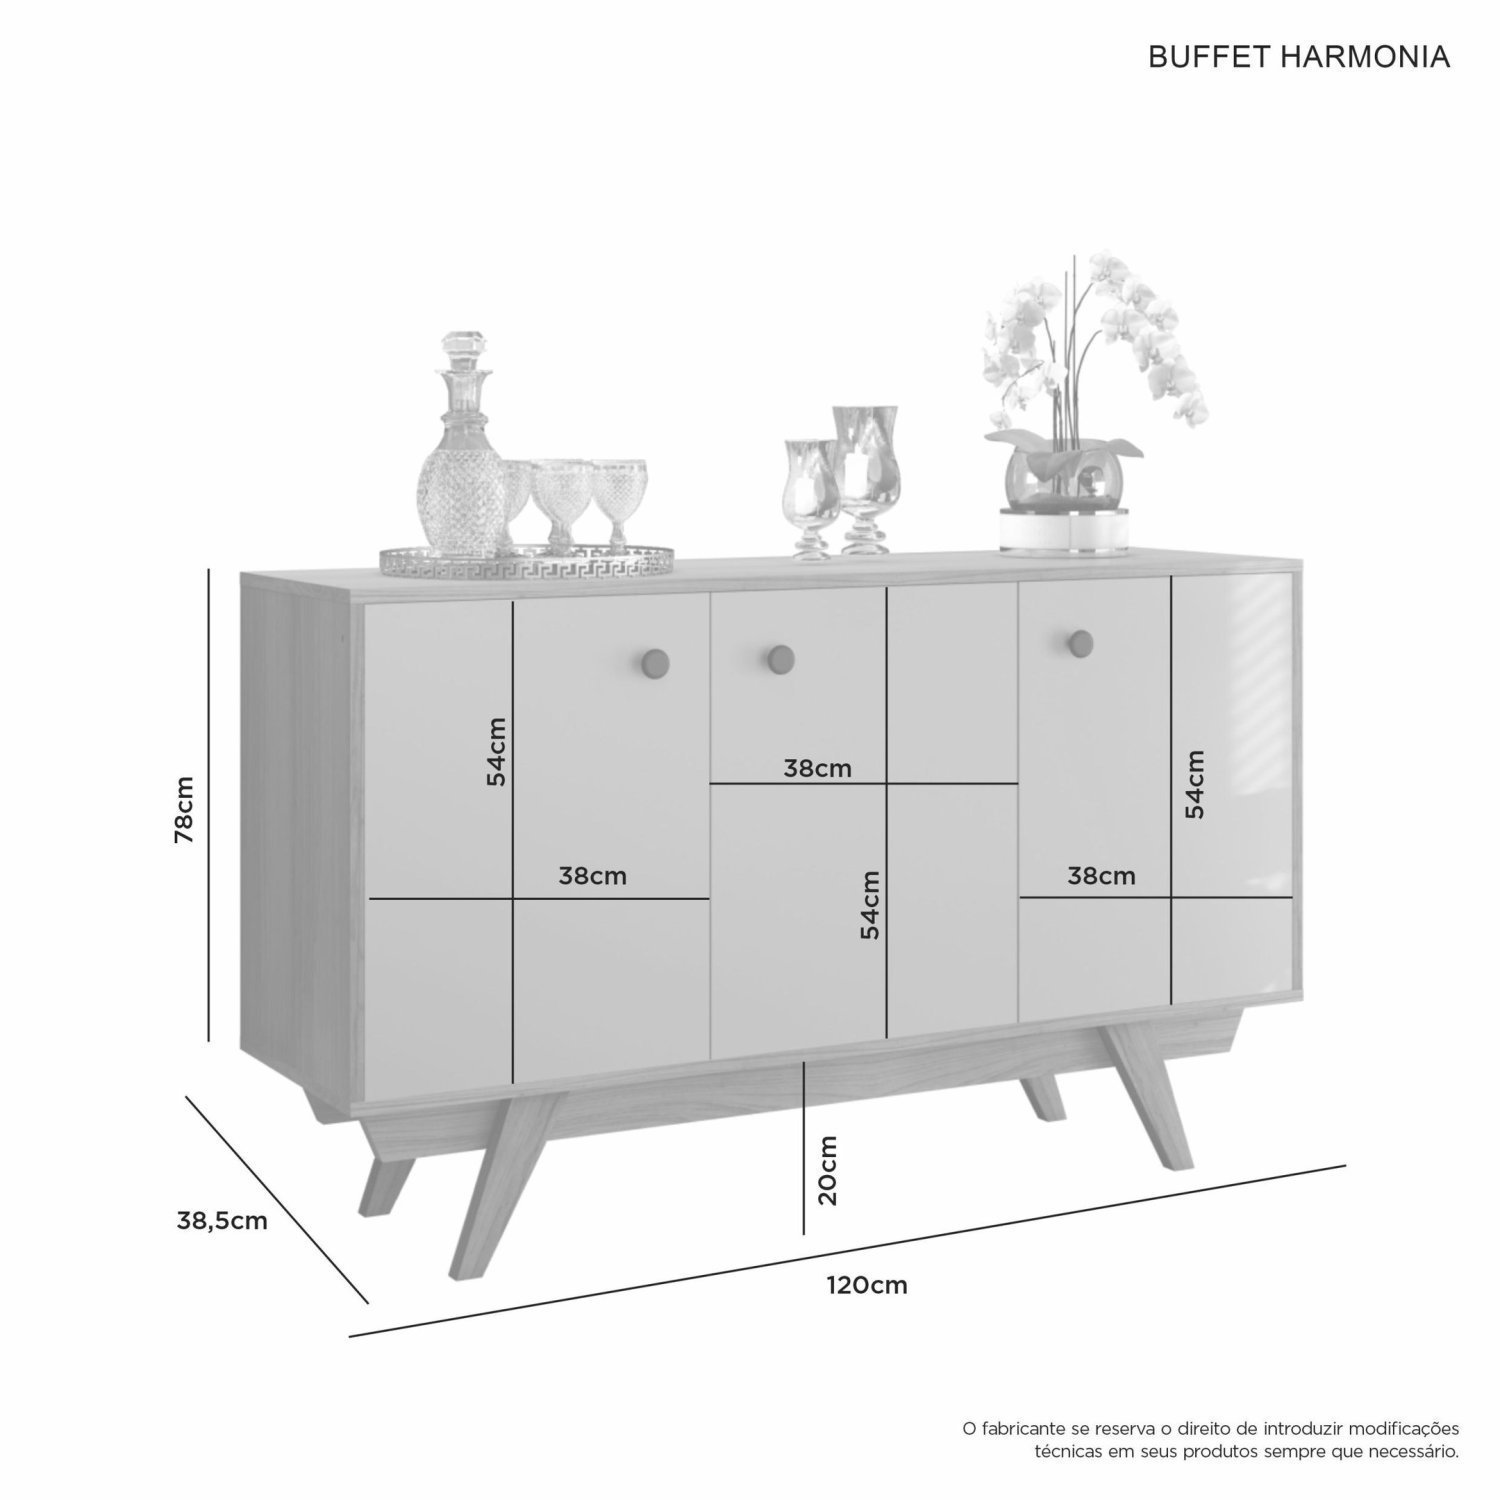 Buffet Aparador 3 Portas Harmonia Candian JCM Móveis - 4